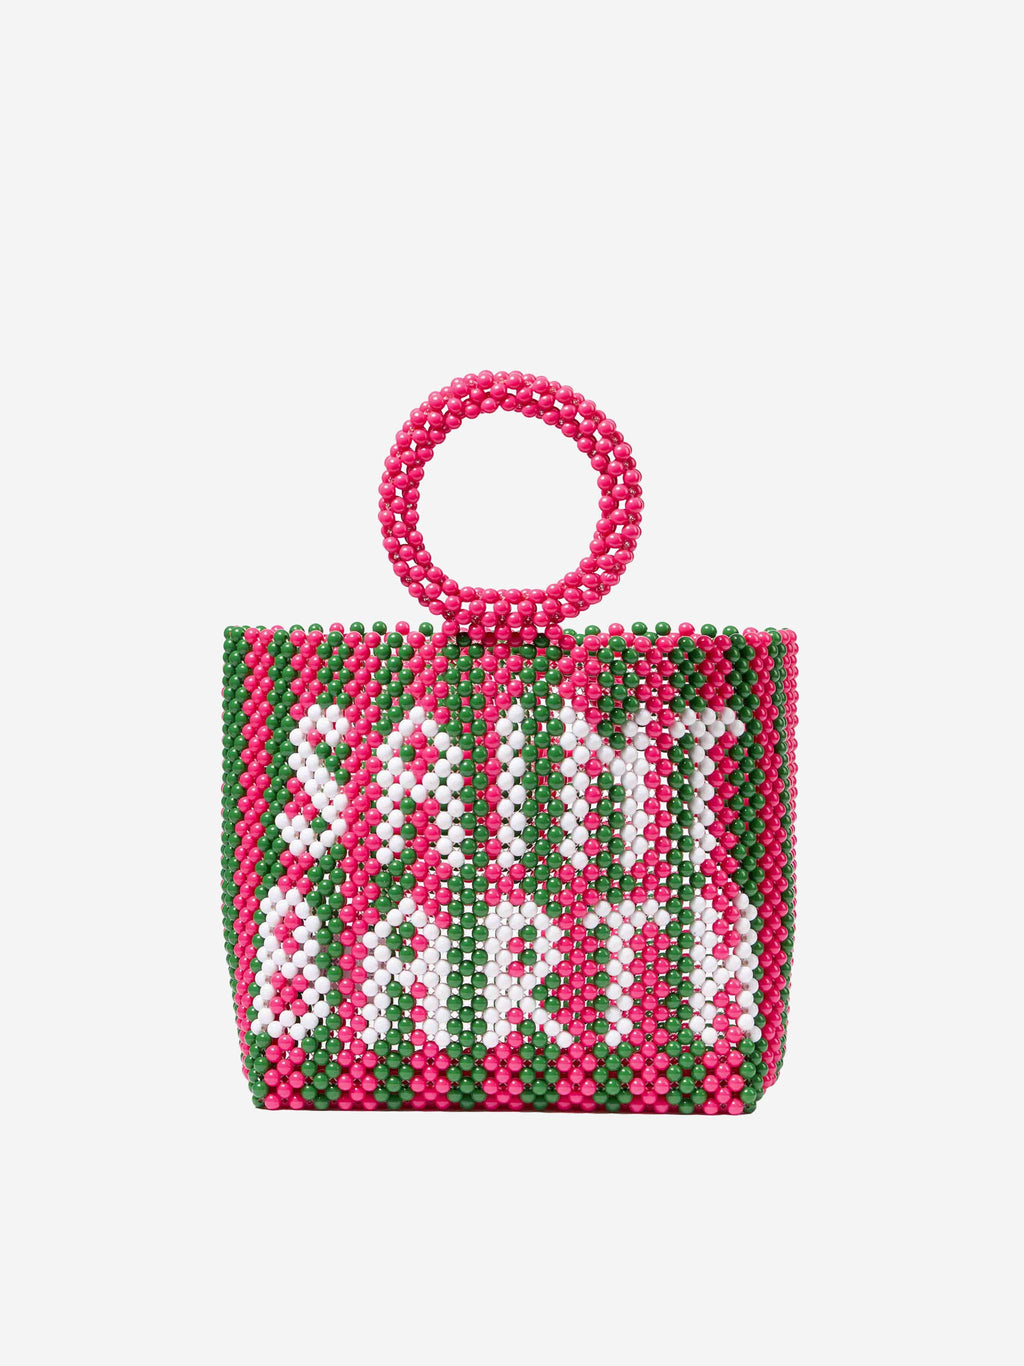 Crocheted Beaded Fringe Handbag Pattern